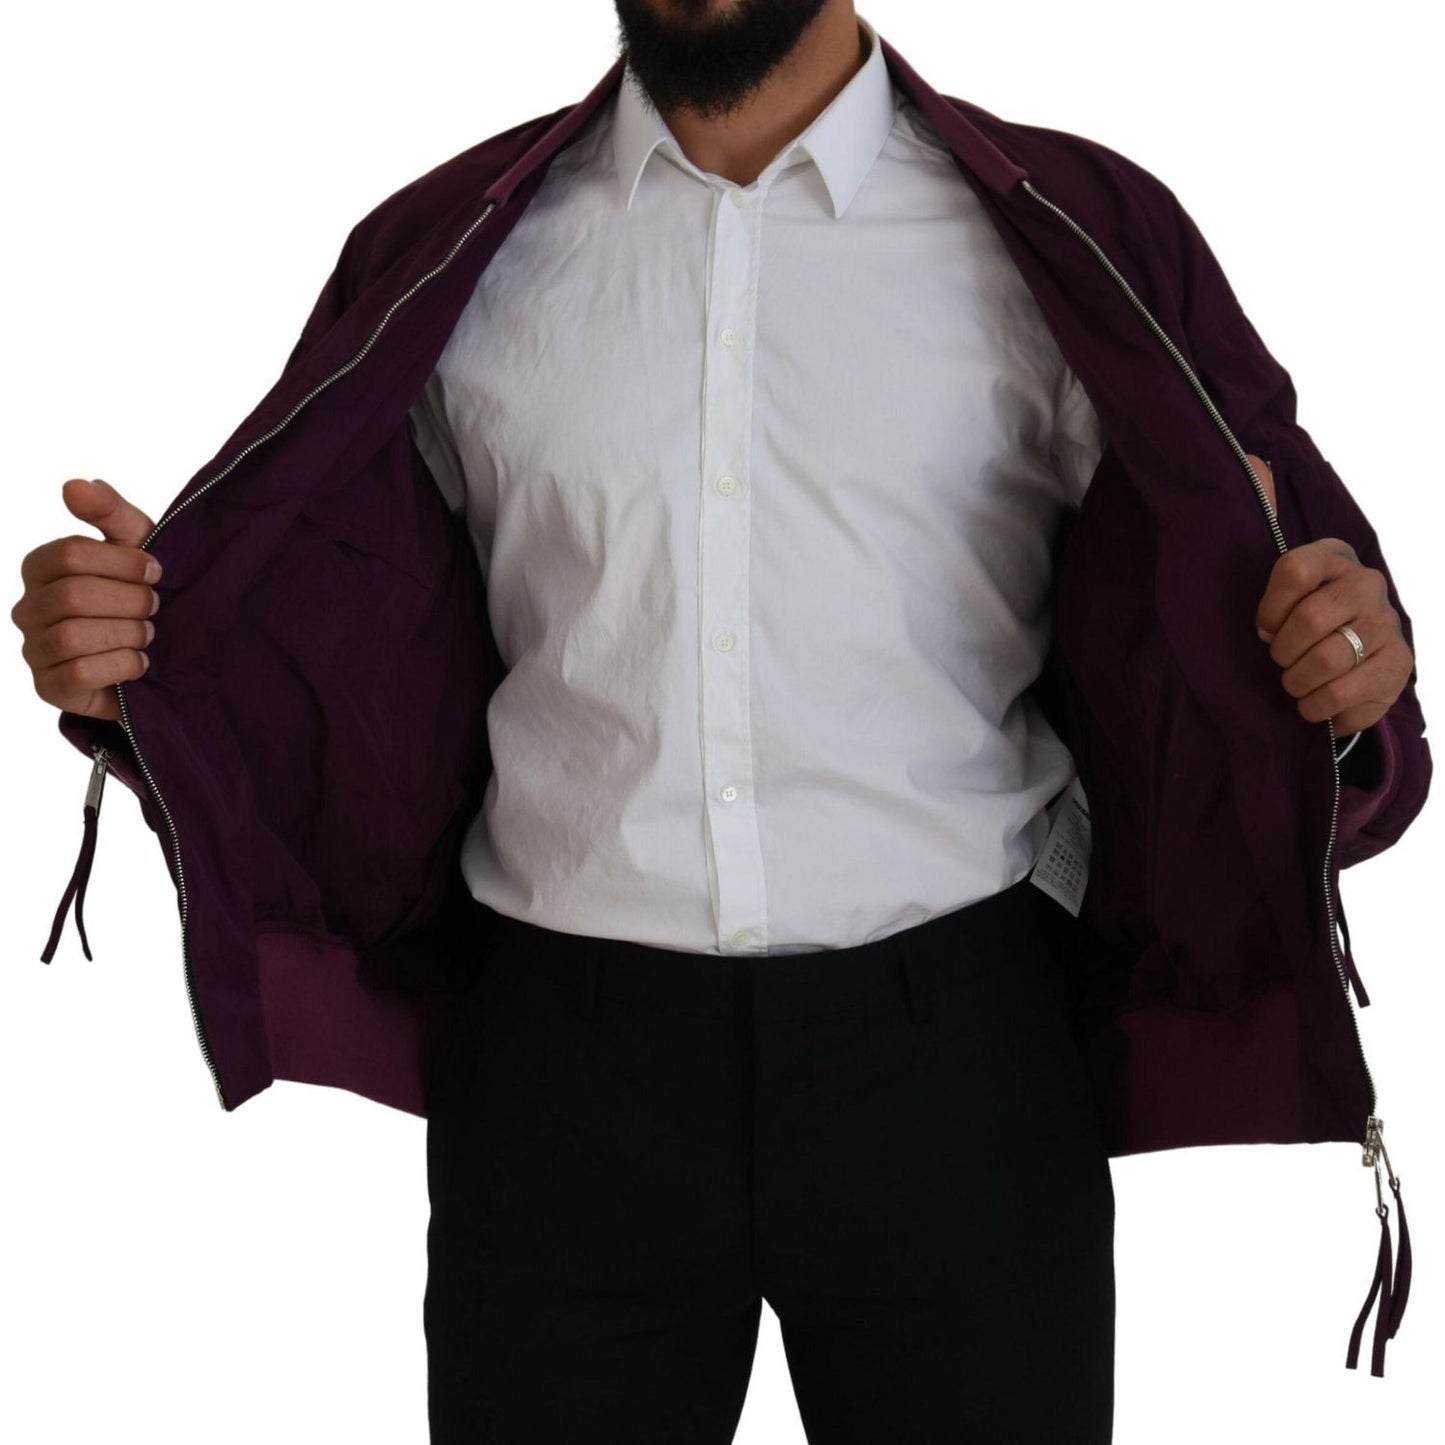 Dsquared² Purple Polyester Full Zipper Bomber Jacket purple-polyester-full-zipper-bomber-jacket